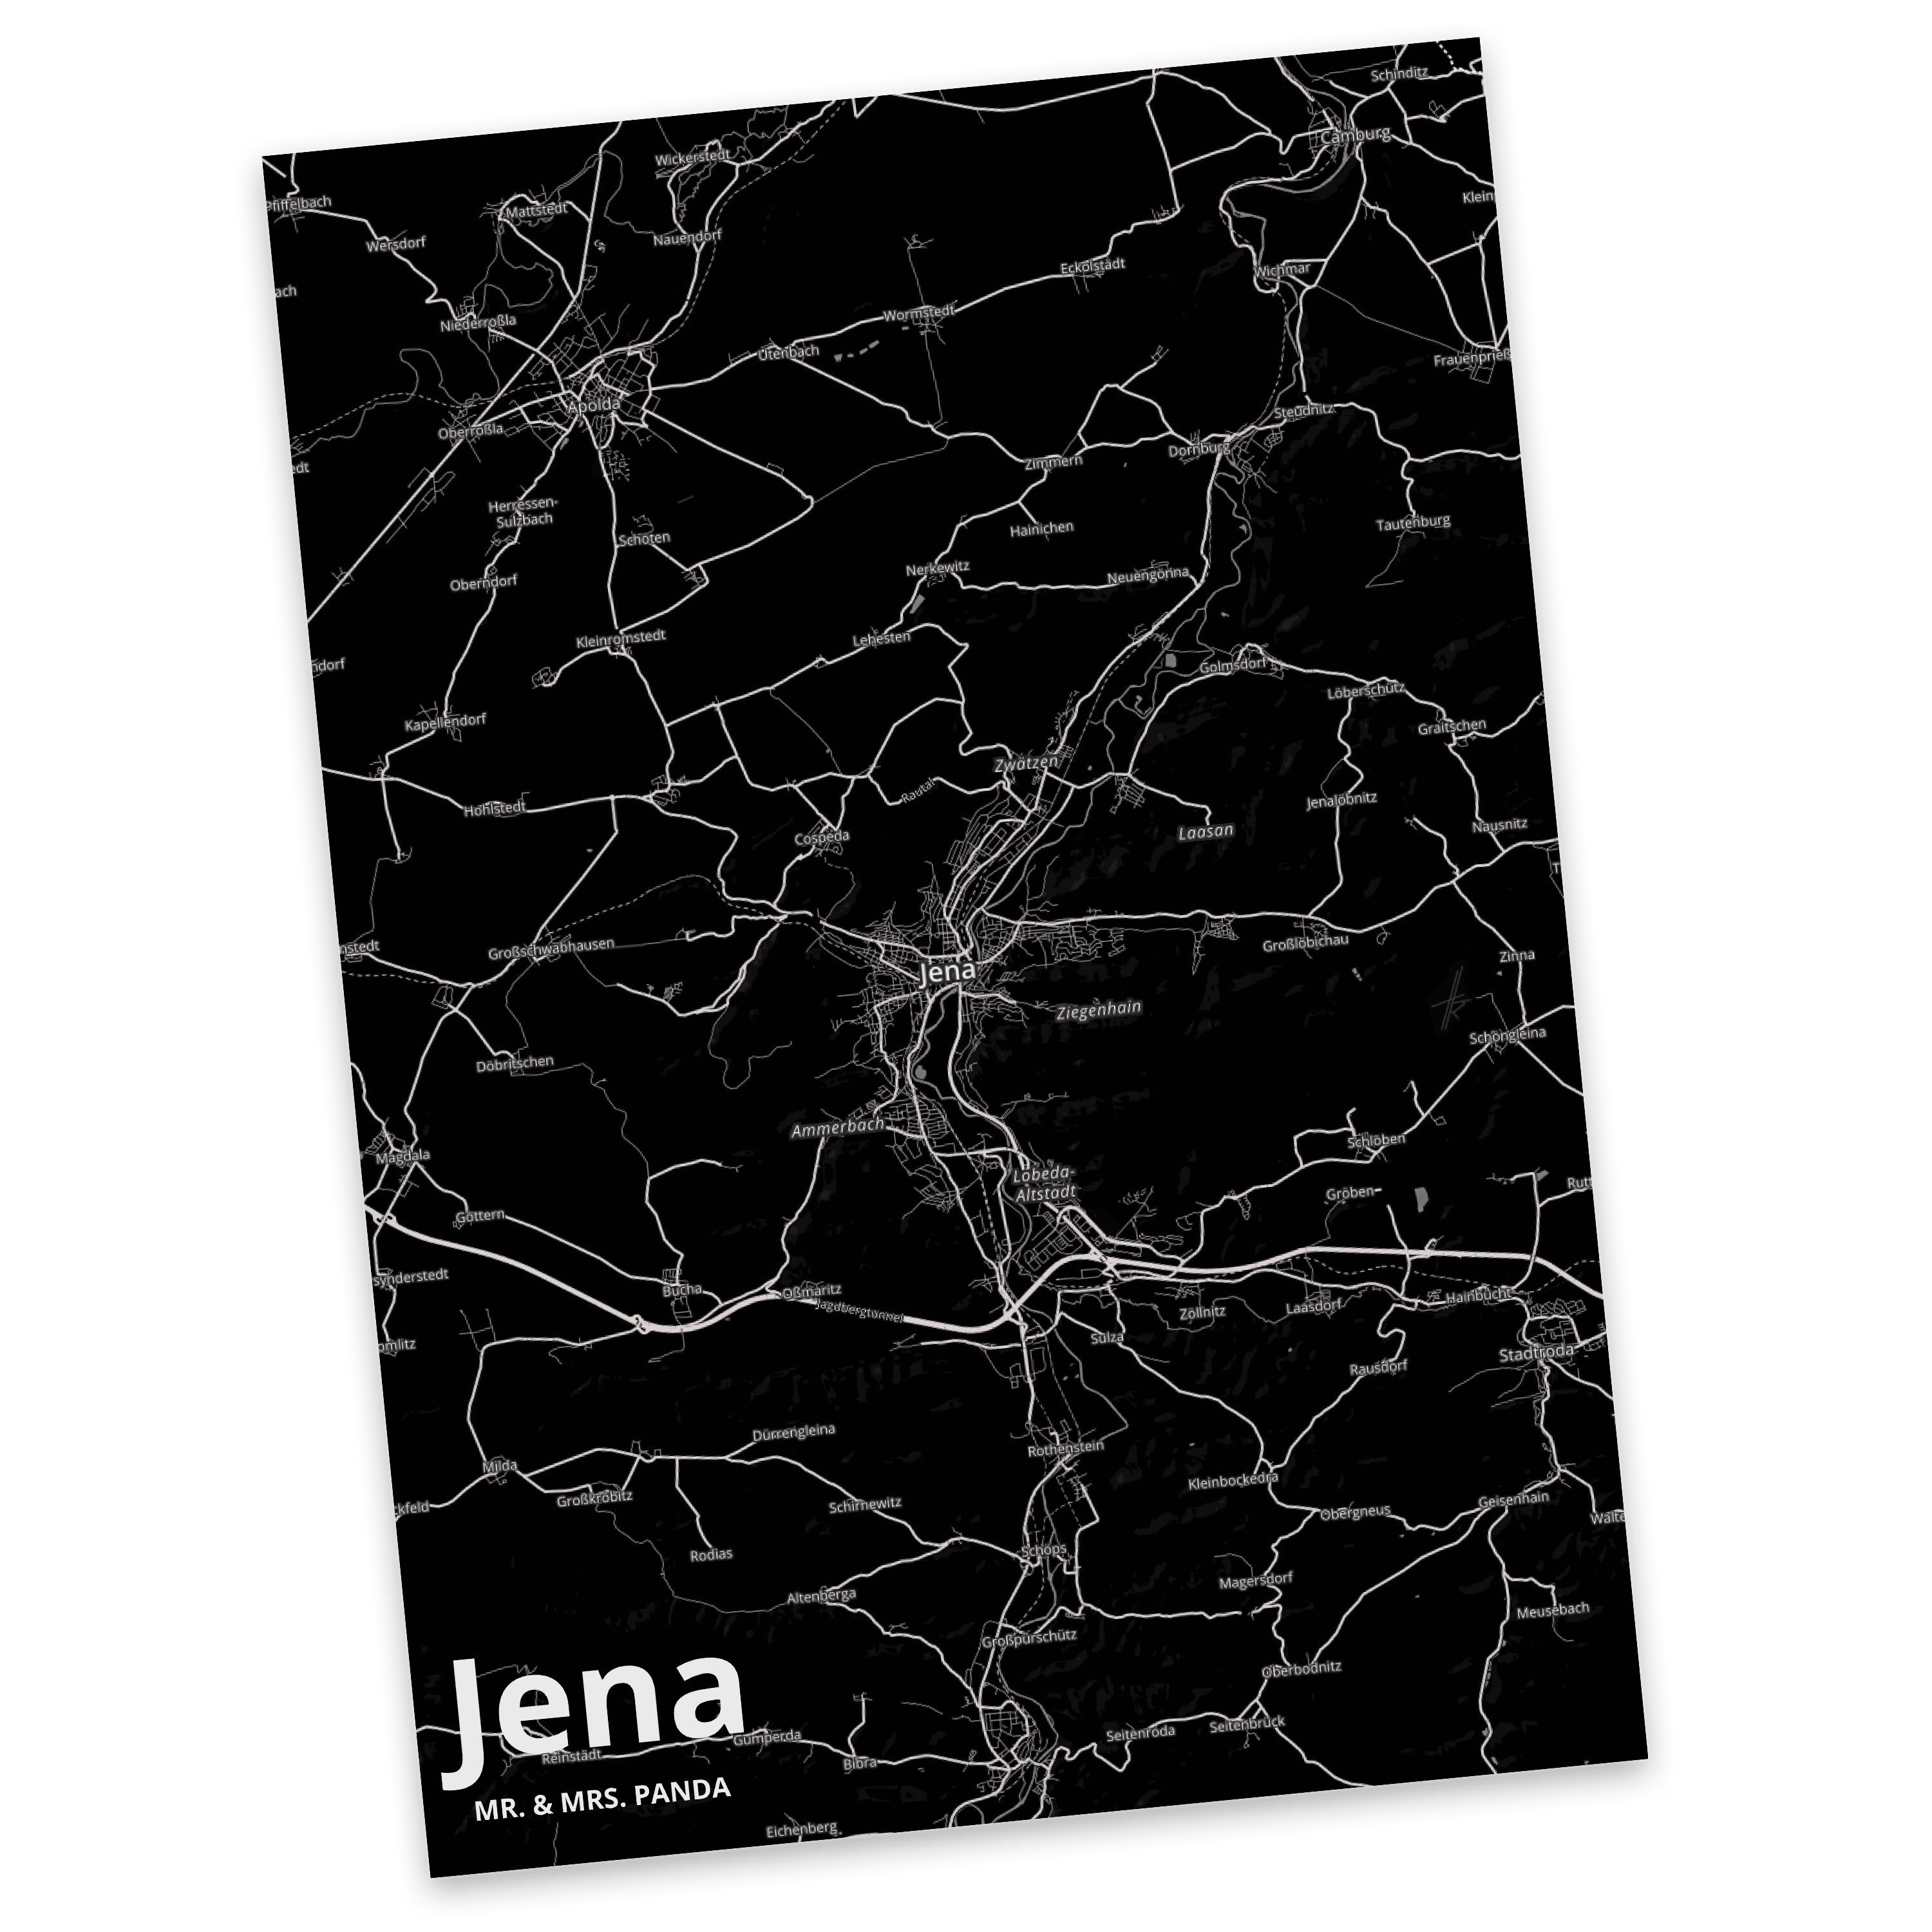 Mr. & Mrs. Panda Postkarte Jena - Geschenk, Ort, Einladung, Dankeskarte, Dorf, Städte, Ansichtsk